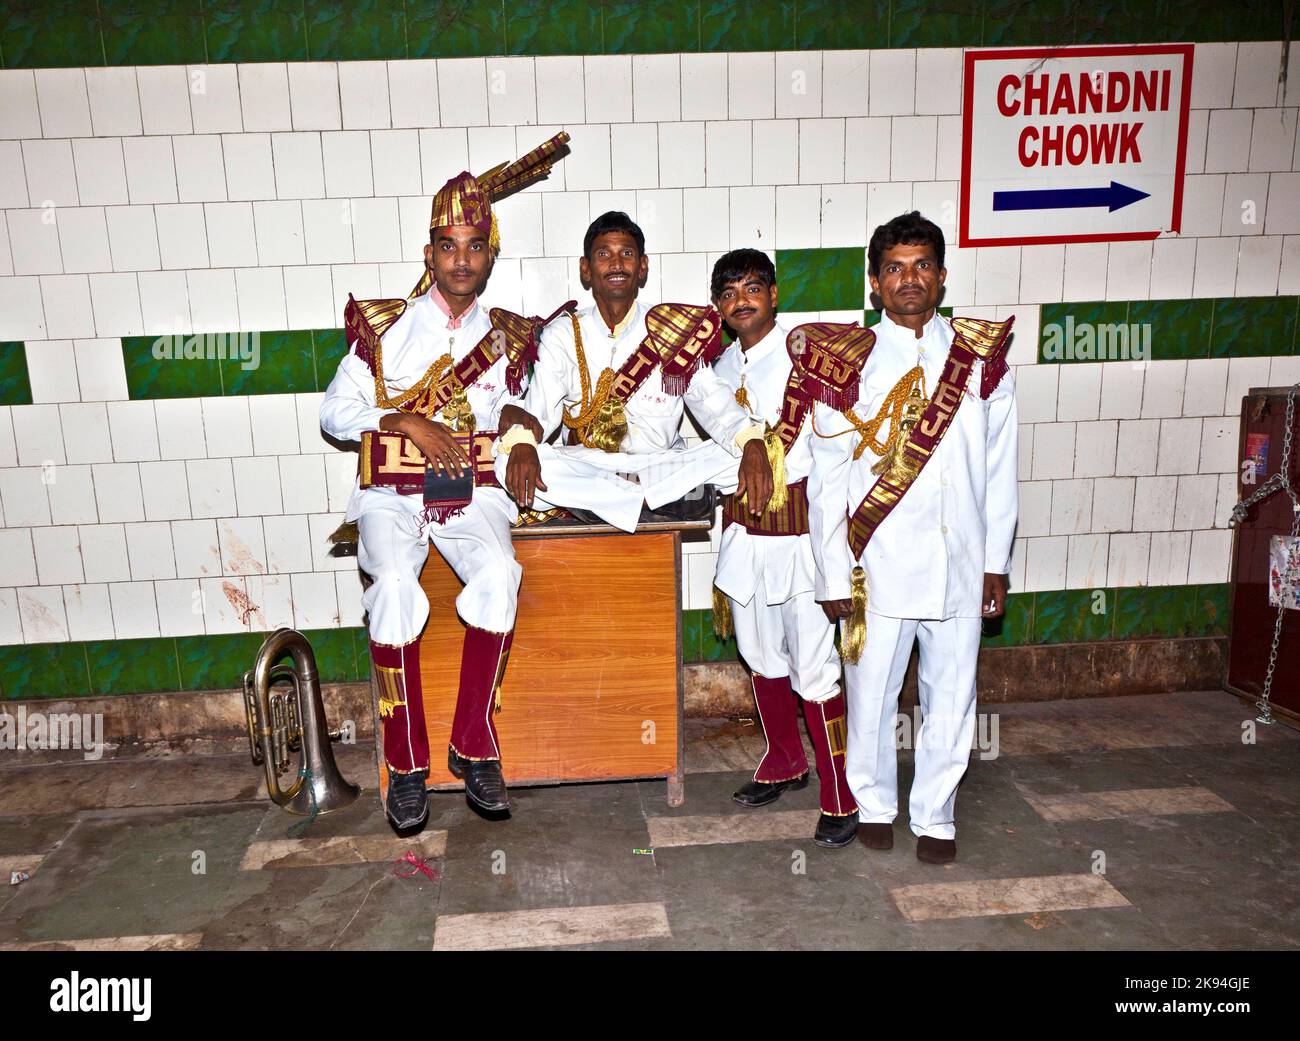 Delhi, Indien - 9. November 2011: Mitglieder einer Blaskapelle zeigen dem Publikum in einer unterirdischen Passage in Dehli, Indien, ihr Repertoire. Messingbänder w Stockfoto